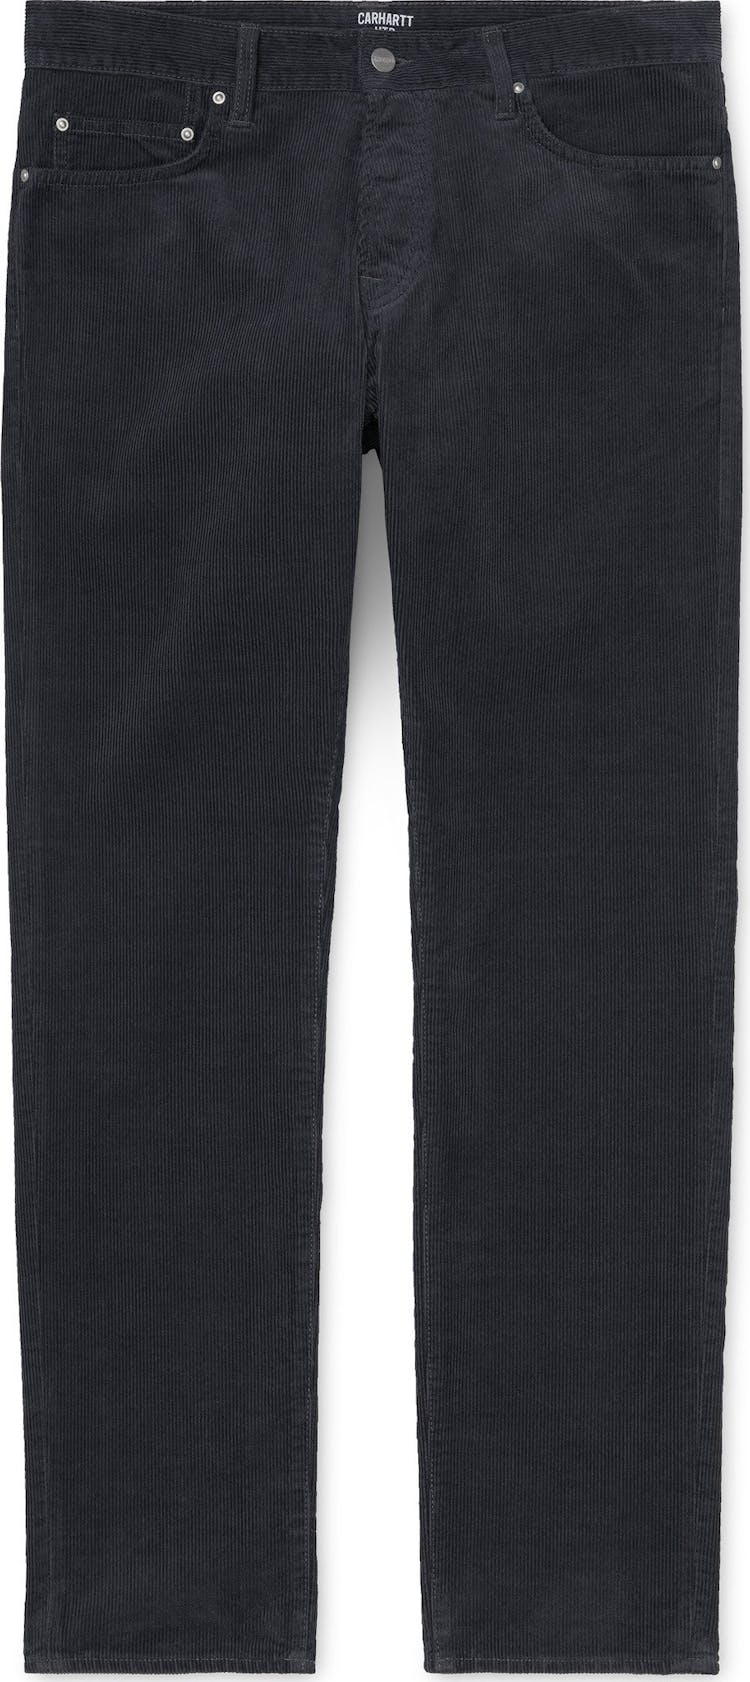 Numéro de l'image de la galerie de produits 1 pour le produit Pantalon Klondike - Homme